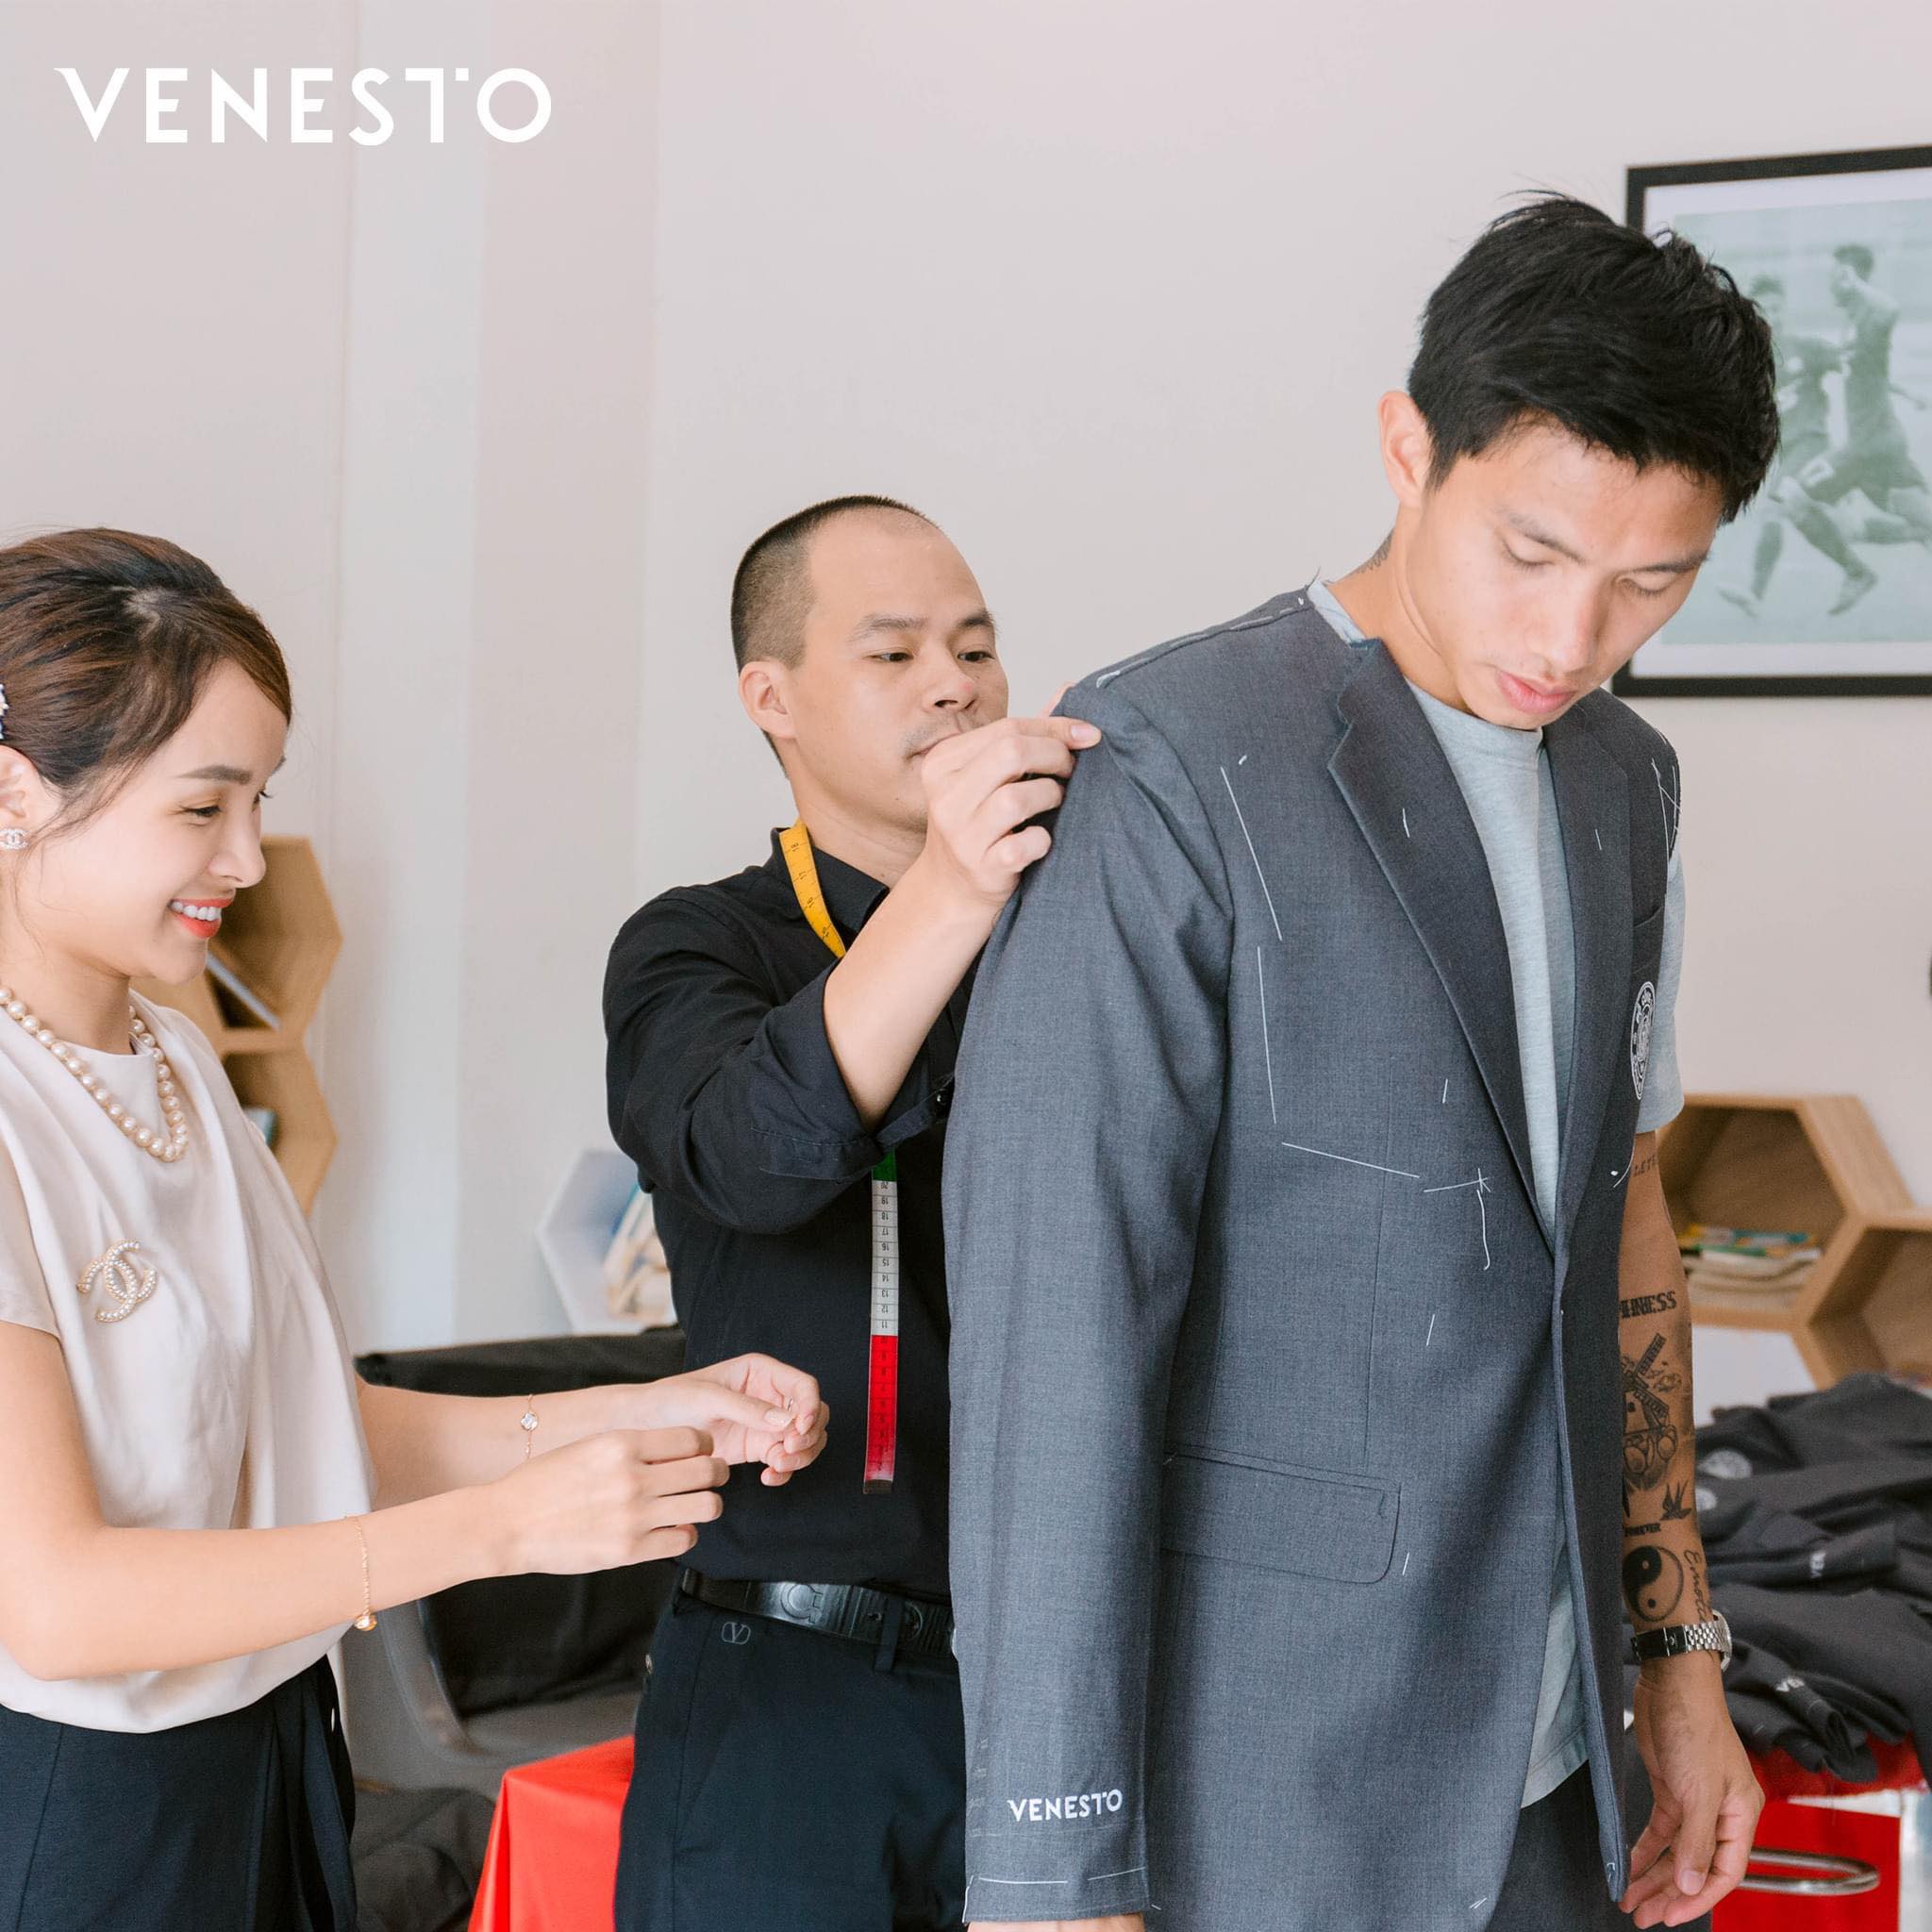 Thương hiệu Veston nam Venesto chú trọng việc hấp dẫn khách hàng từ những người nghệ nhân chơi nghệ thuật thông qua chất liệu vải, qua những đường cắt may điêu luyện, gửi gắm trong từng đường kim mũi chỉ.